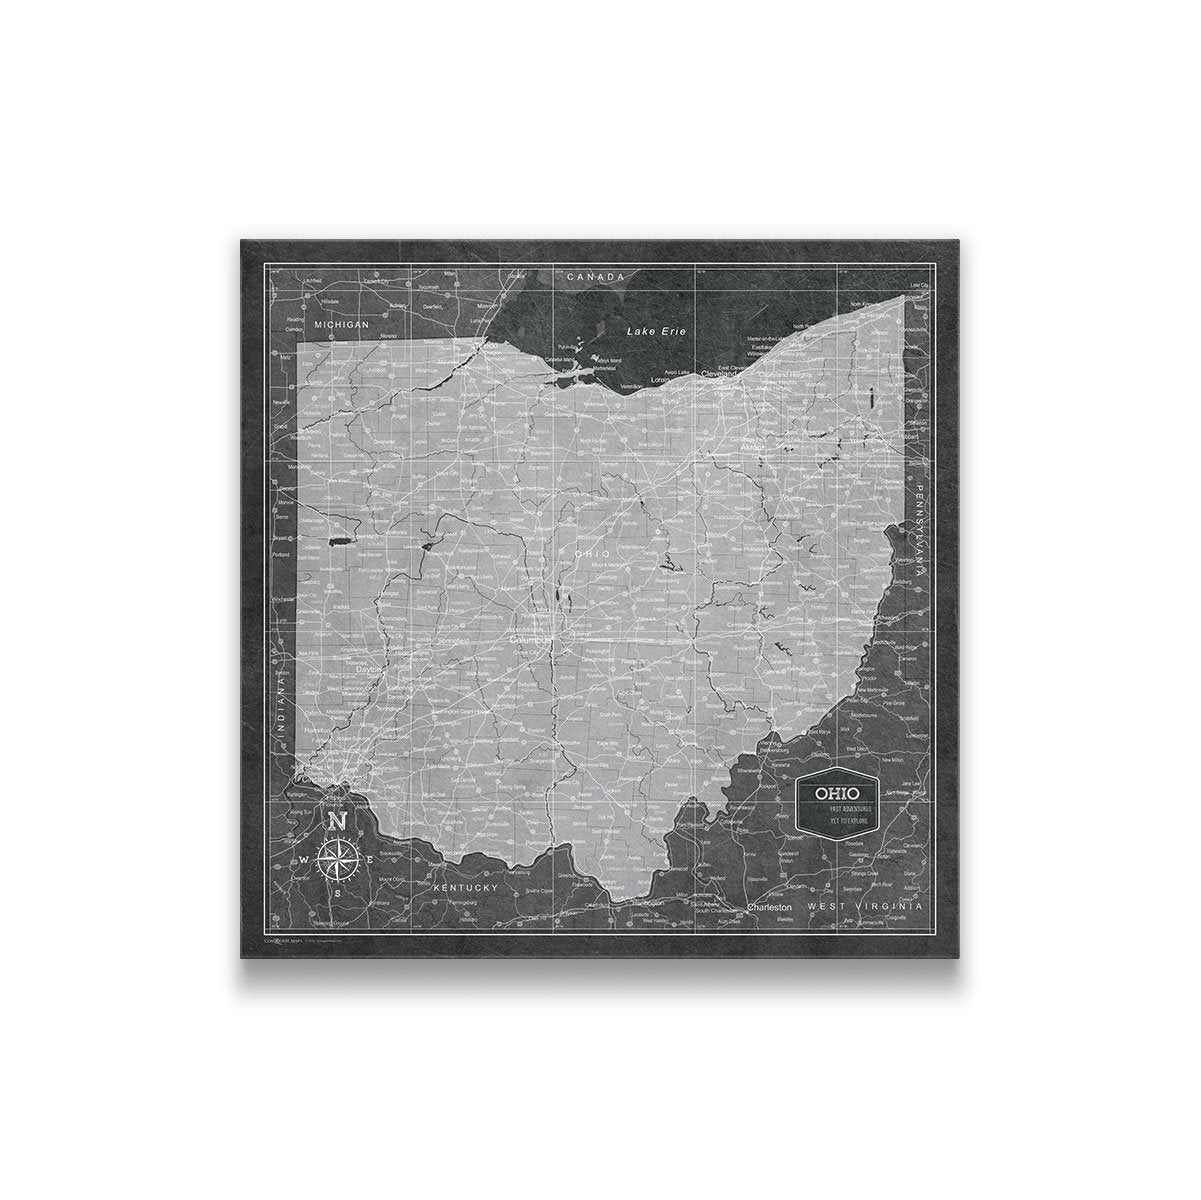 Ohio Poster Maps